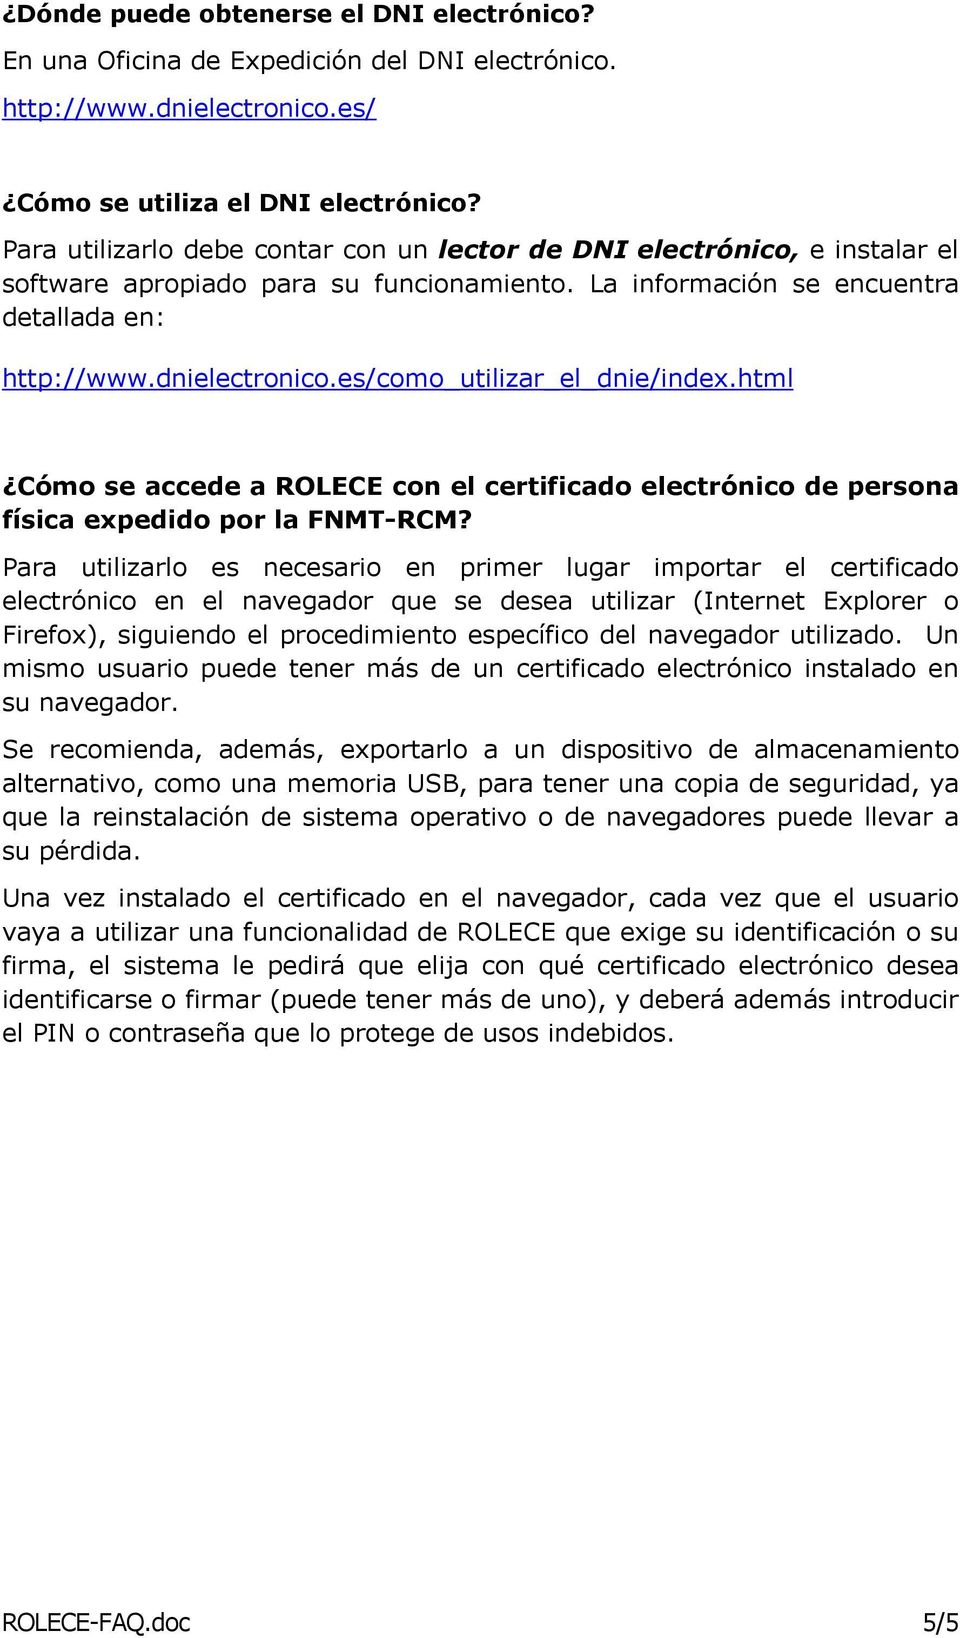 es/como_utilizar_el_dnie/index.html Cómo se accede a ROLECE con el certificado electrónico de persona física expedido por la FNMT-RCM?